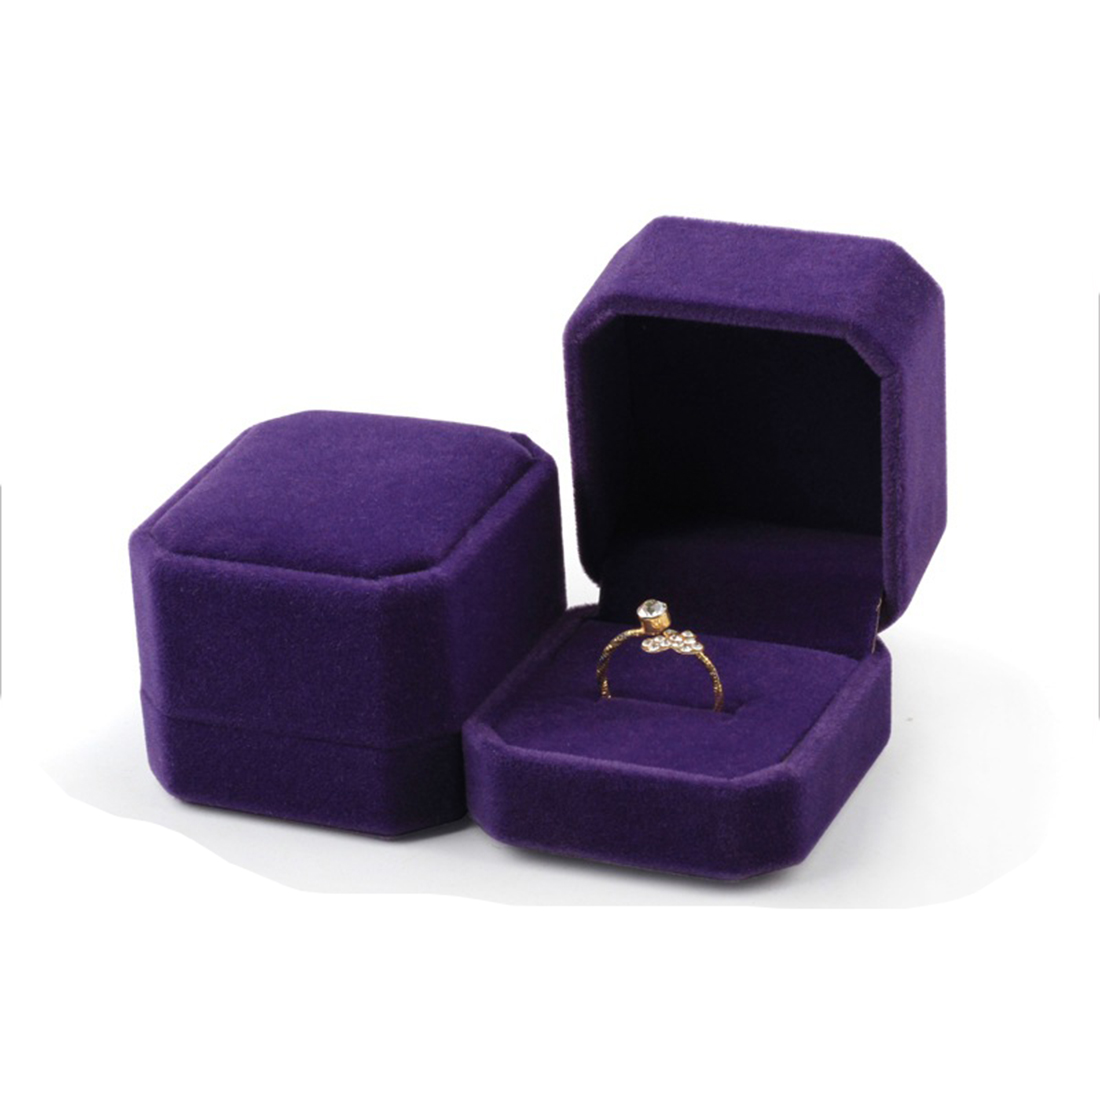 10091八角全紫色戒指盒 55x50x40mm